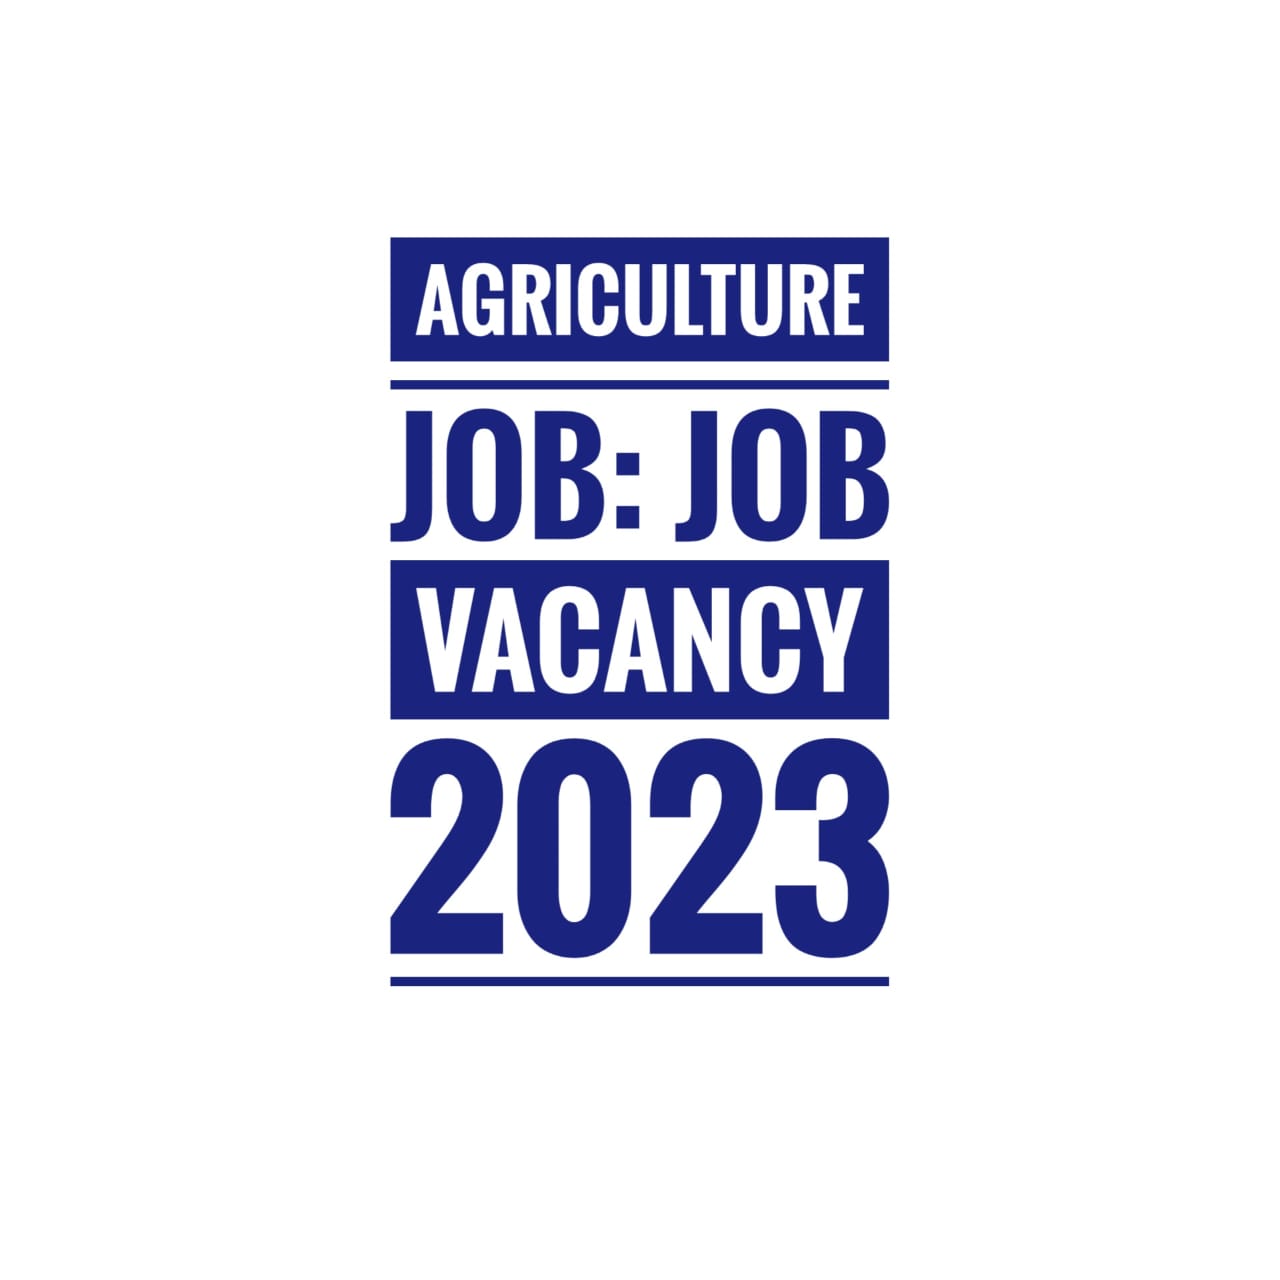 Agriculture Job: Job Vacancy 2023